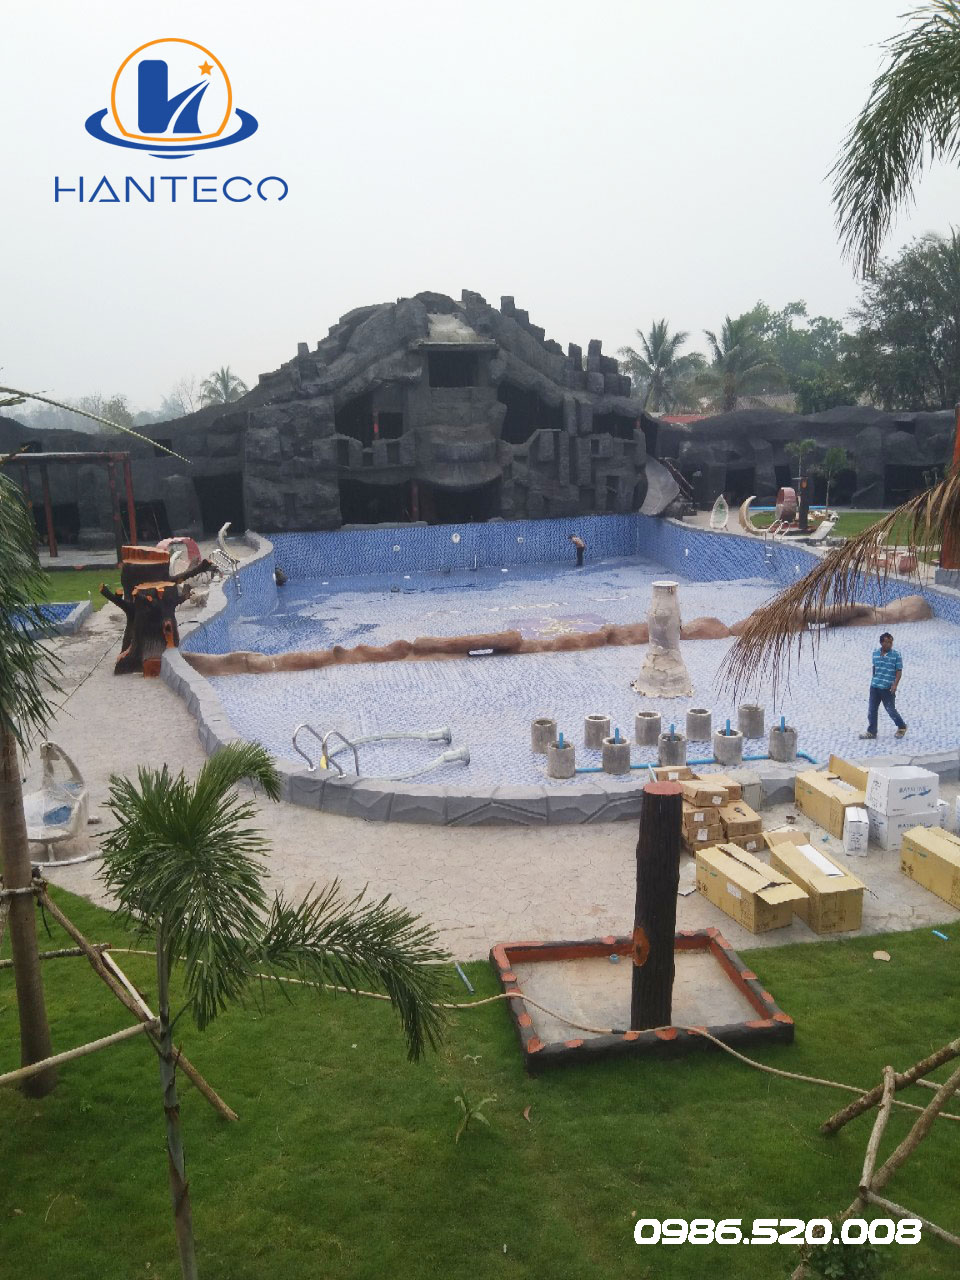 CÔNG trình bể bơi ở Lào do Hanteco cung cấp vật tư